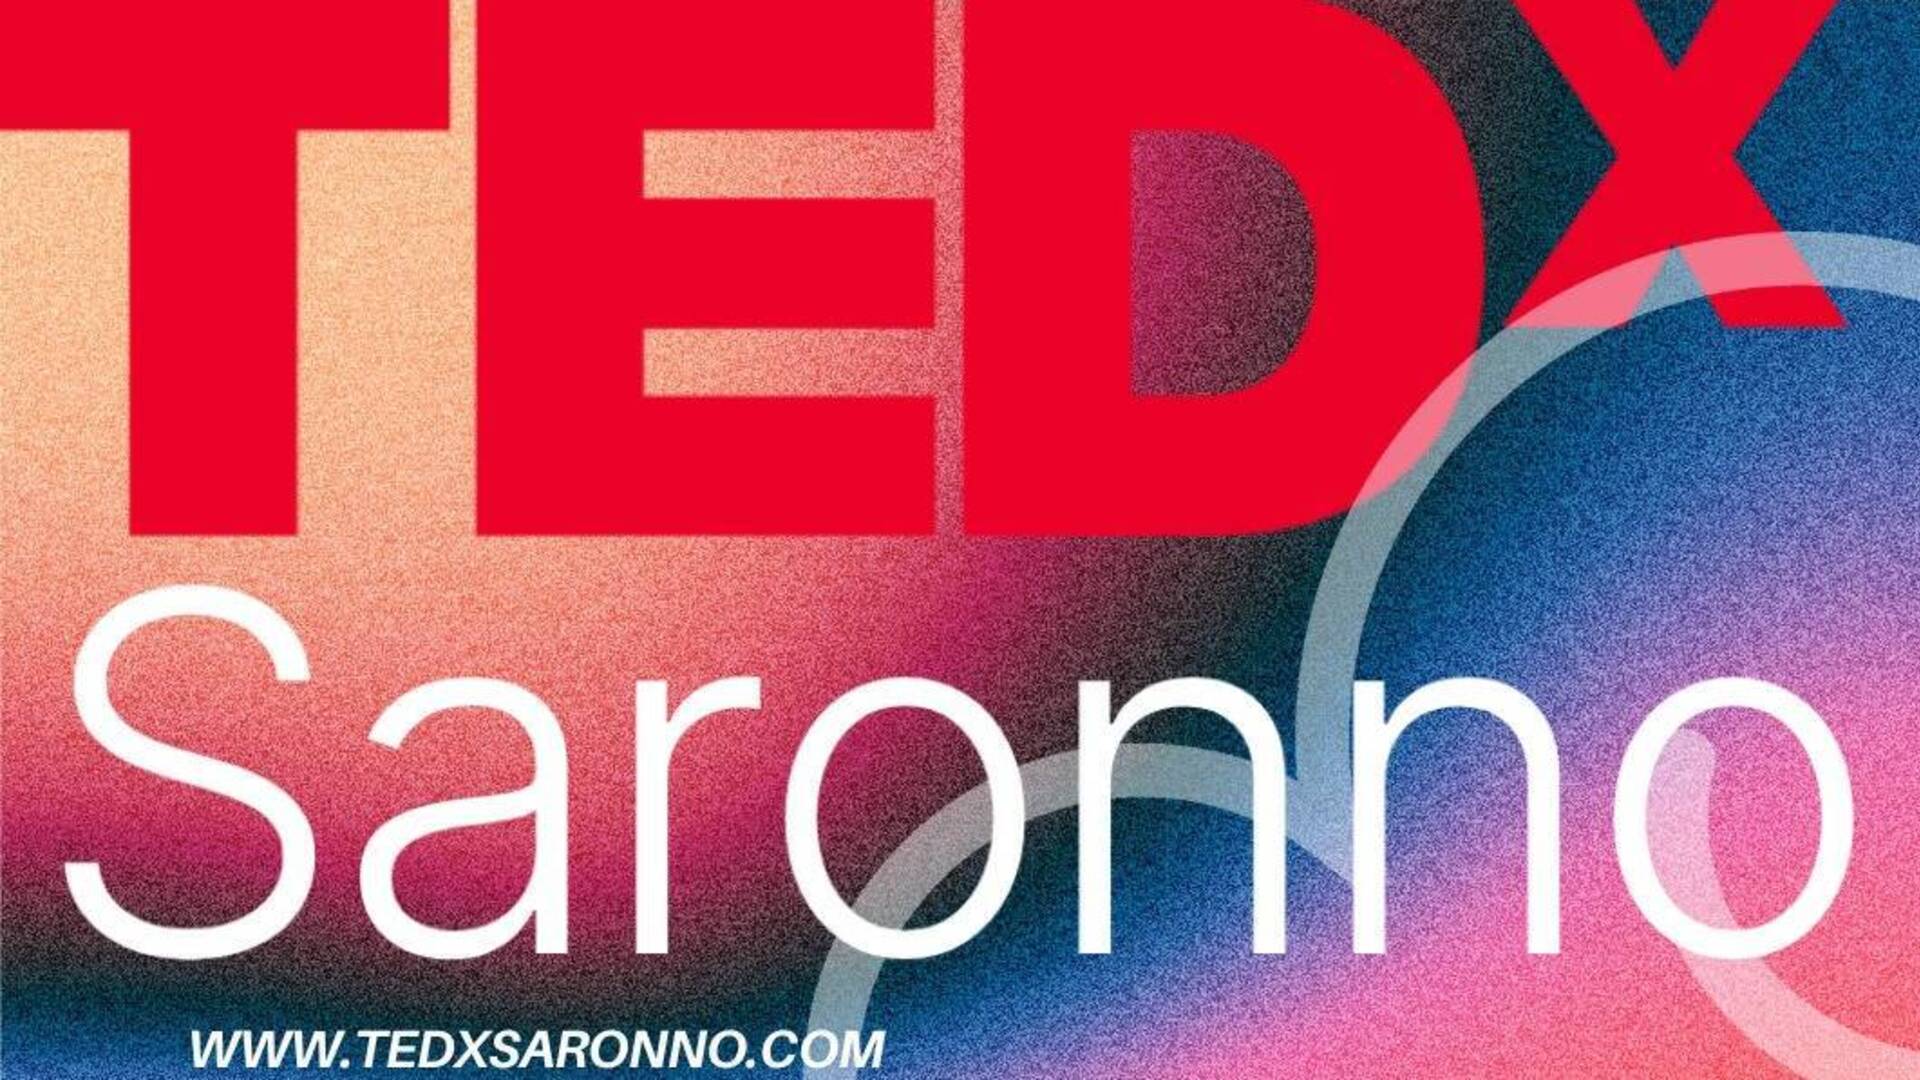 TEDxSaronno sta per arrivare, appuntamento a sabato 25 maggio